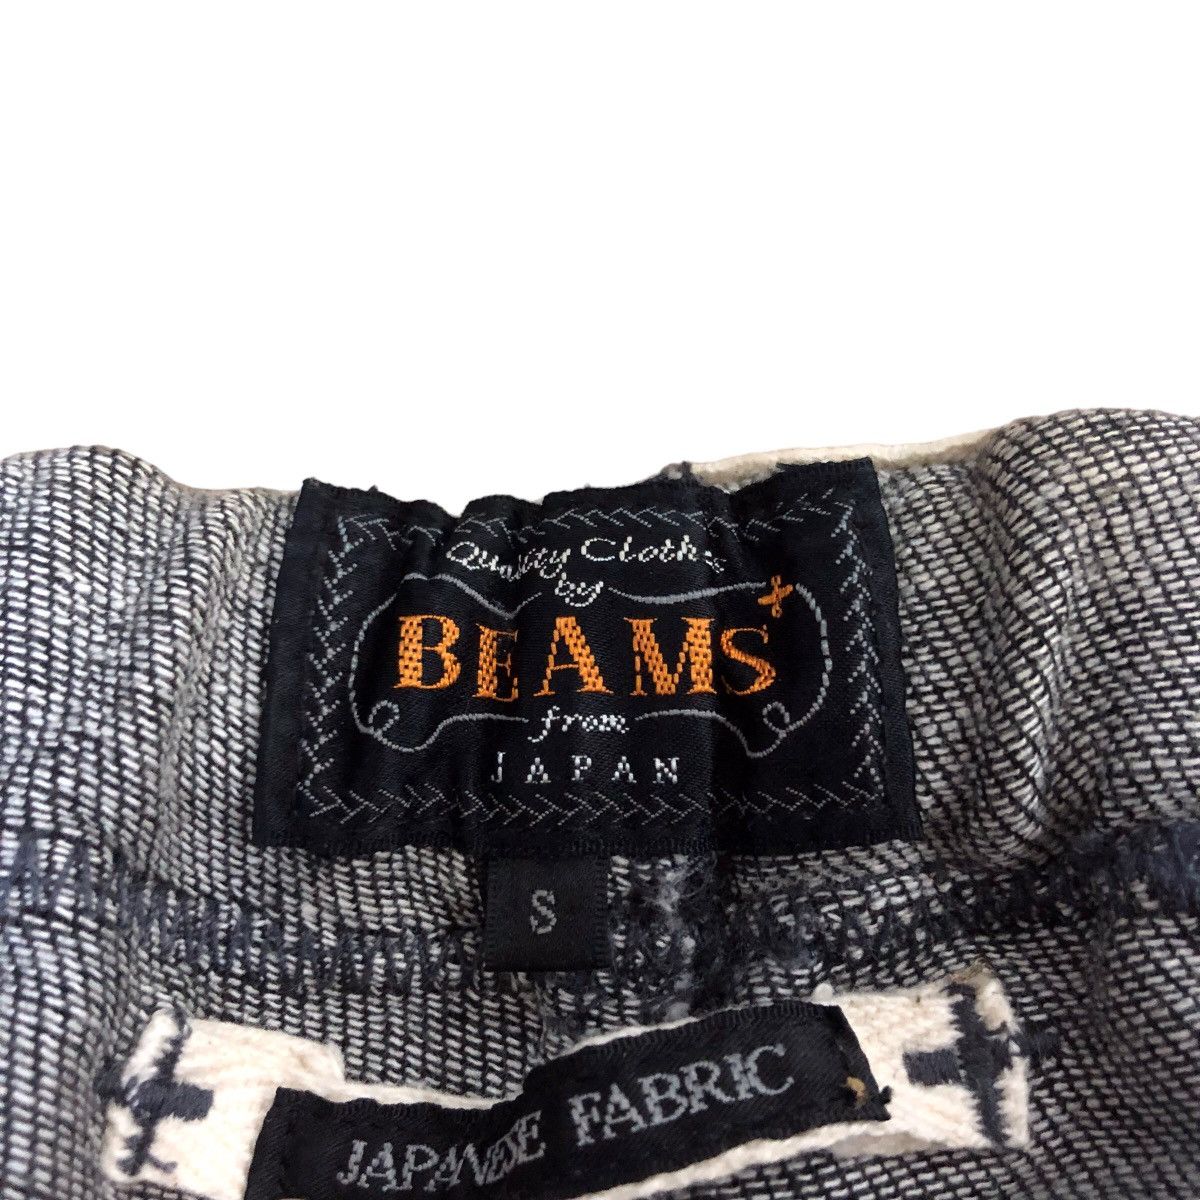 Beams japanese fabric jogger pants - 2